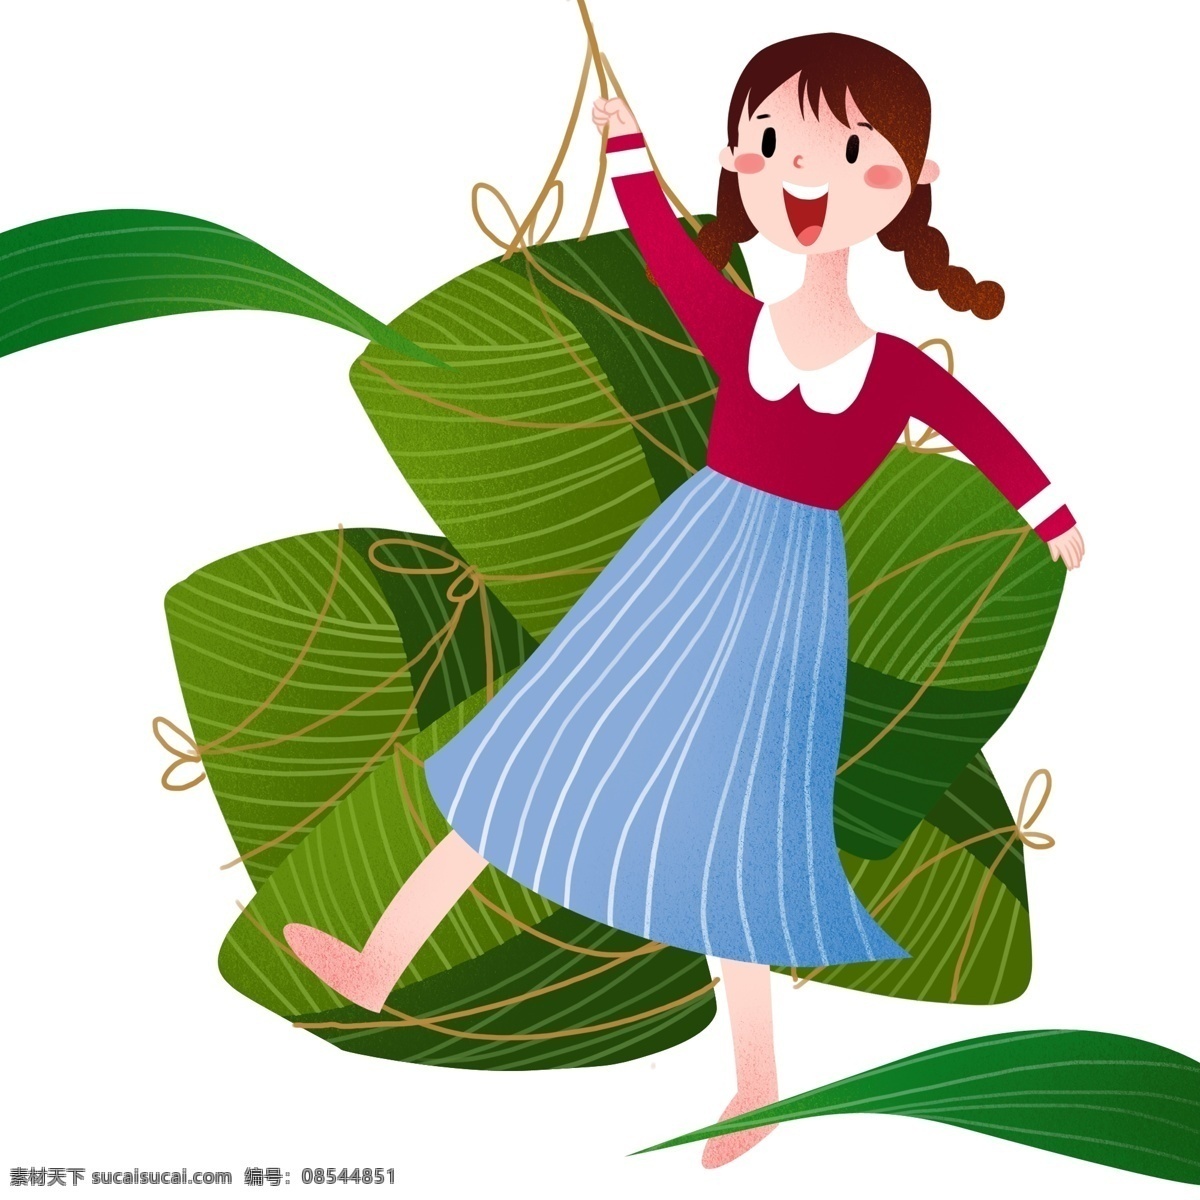 跳舞 小女孩 粽子 端午节 人物 插画 跳舞的小女孩 开心的小女孩 黄色的绳子 绿色的粽子 卡通人物